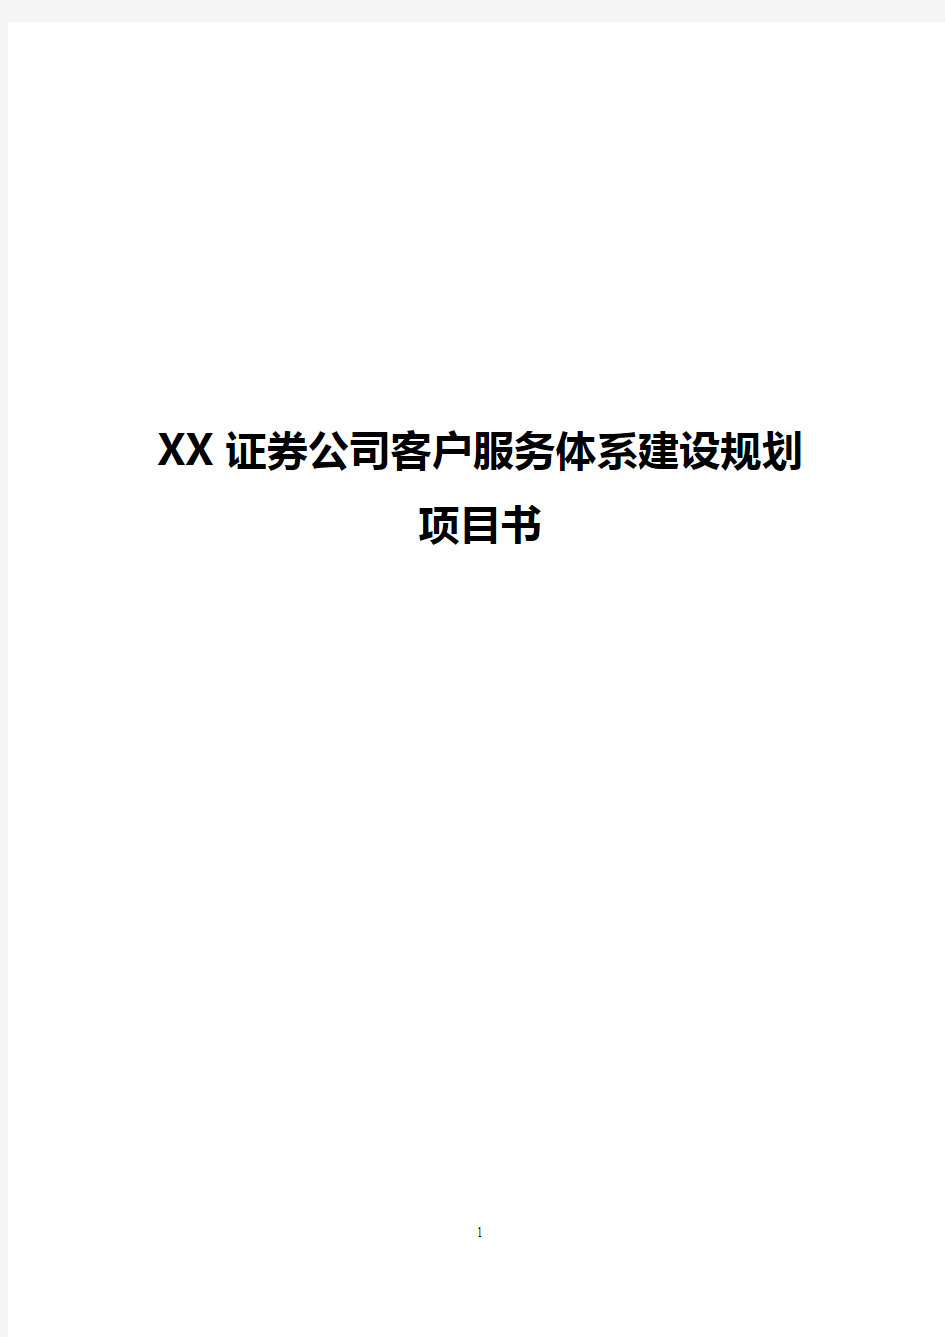 【完整新编】XX证券公司客户服务体系建设规划项目建议书